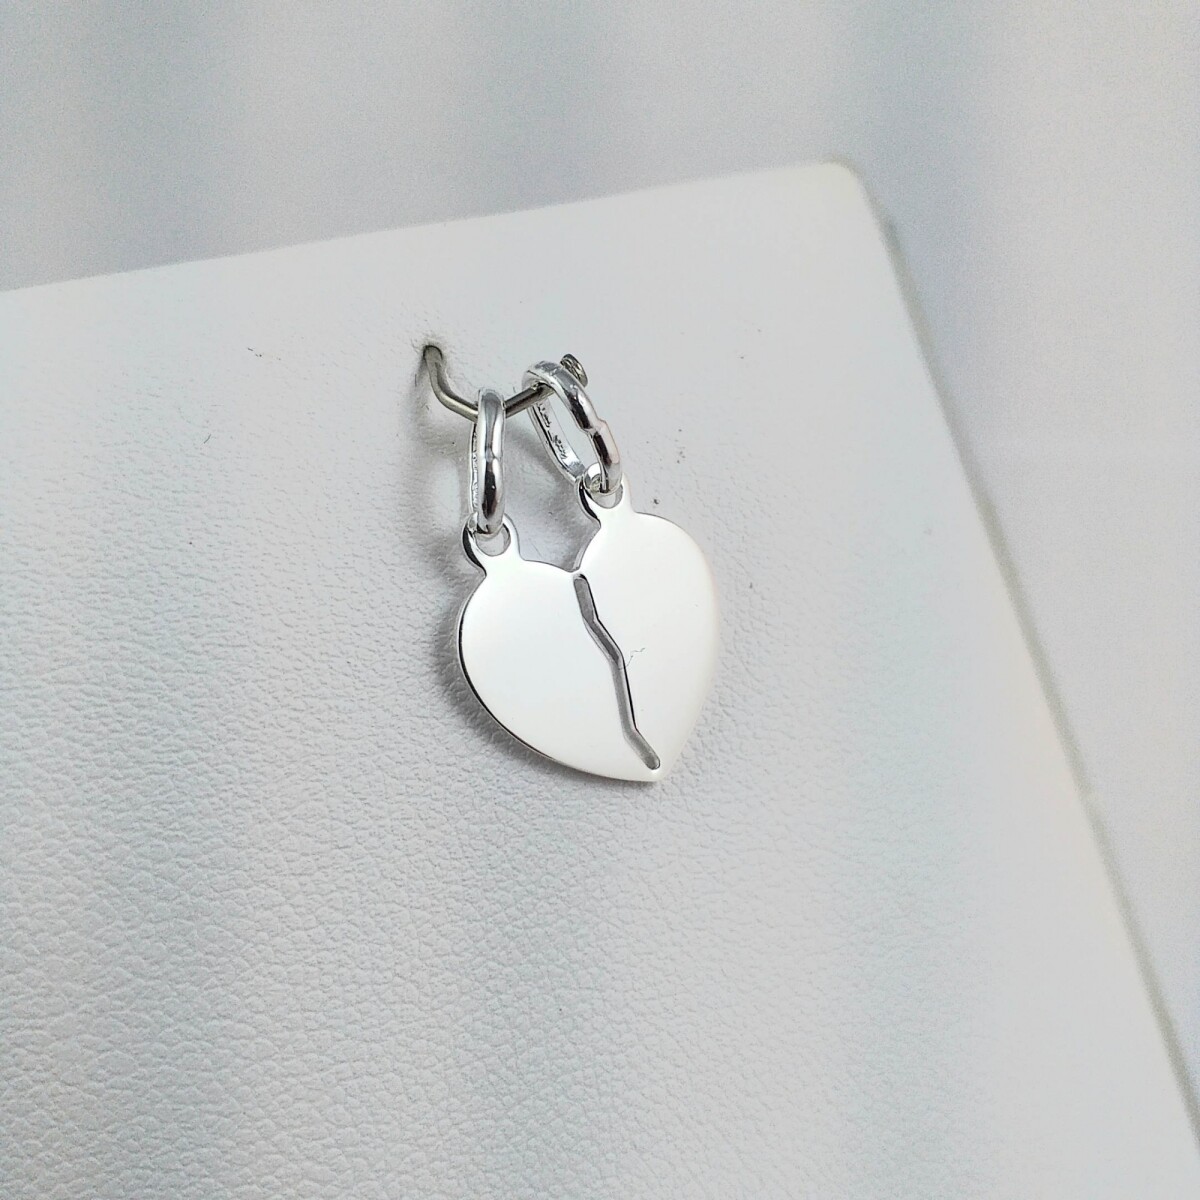 Dije de plata 925 modelo Mitad del Corazón 15mm, ideal para parejas y amigos. 